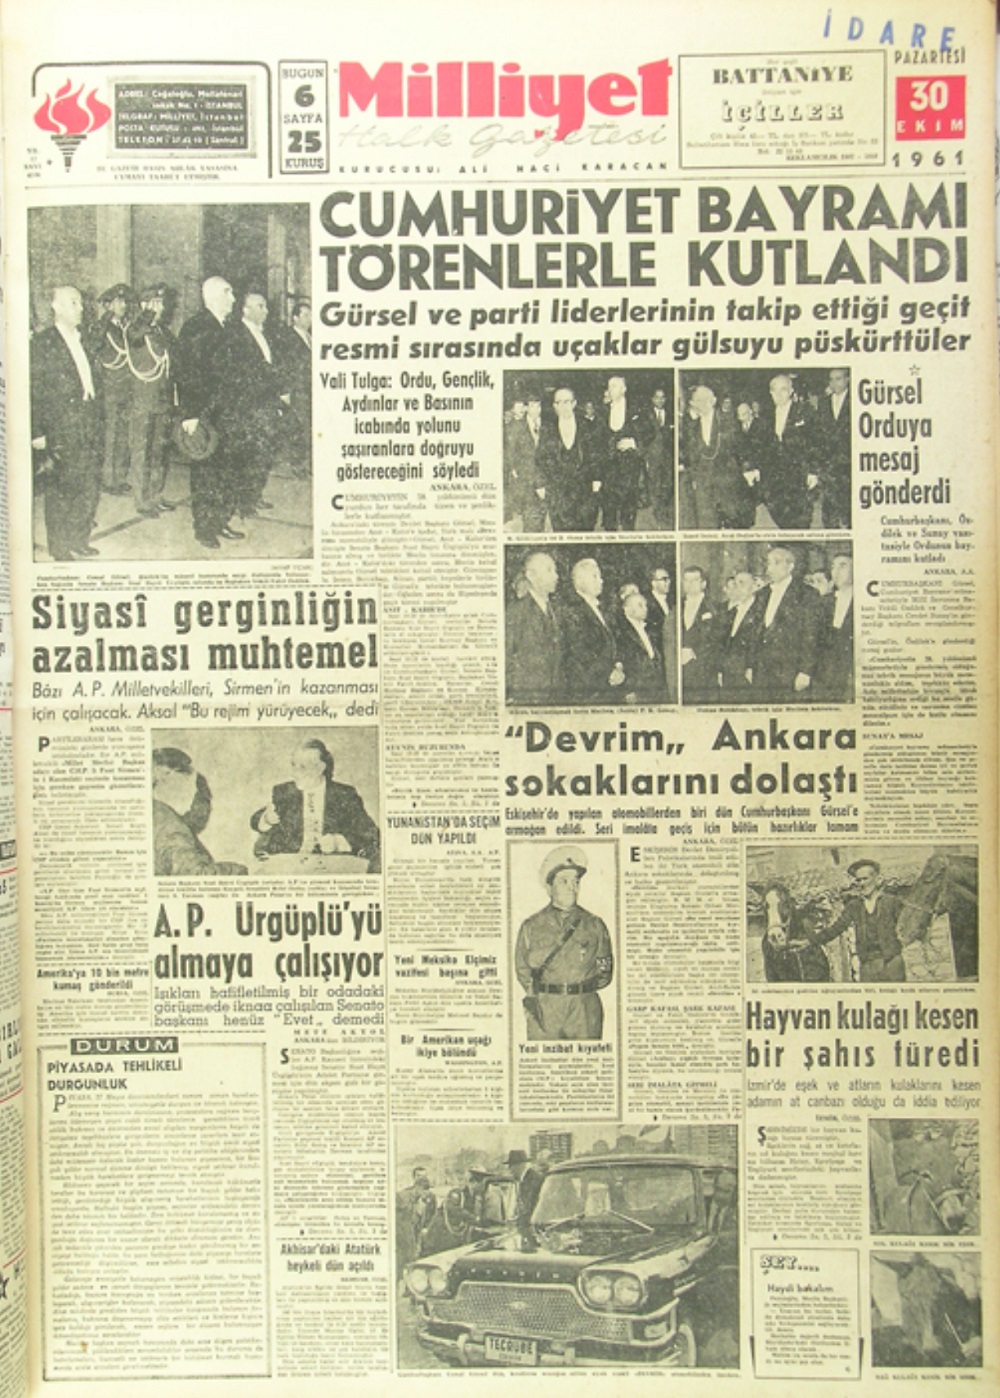 Milliyet Gazetesinin 30 Ekim 1961 tarihli sayısında Devrim Arabalarının tanıtımı haberleştirilmişti